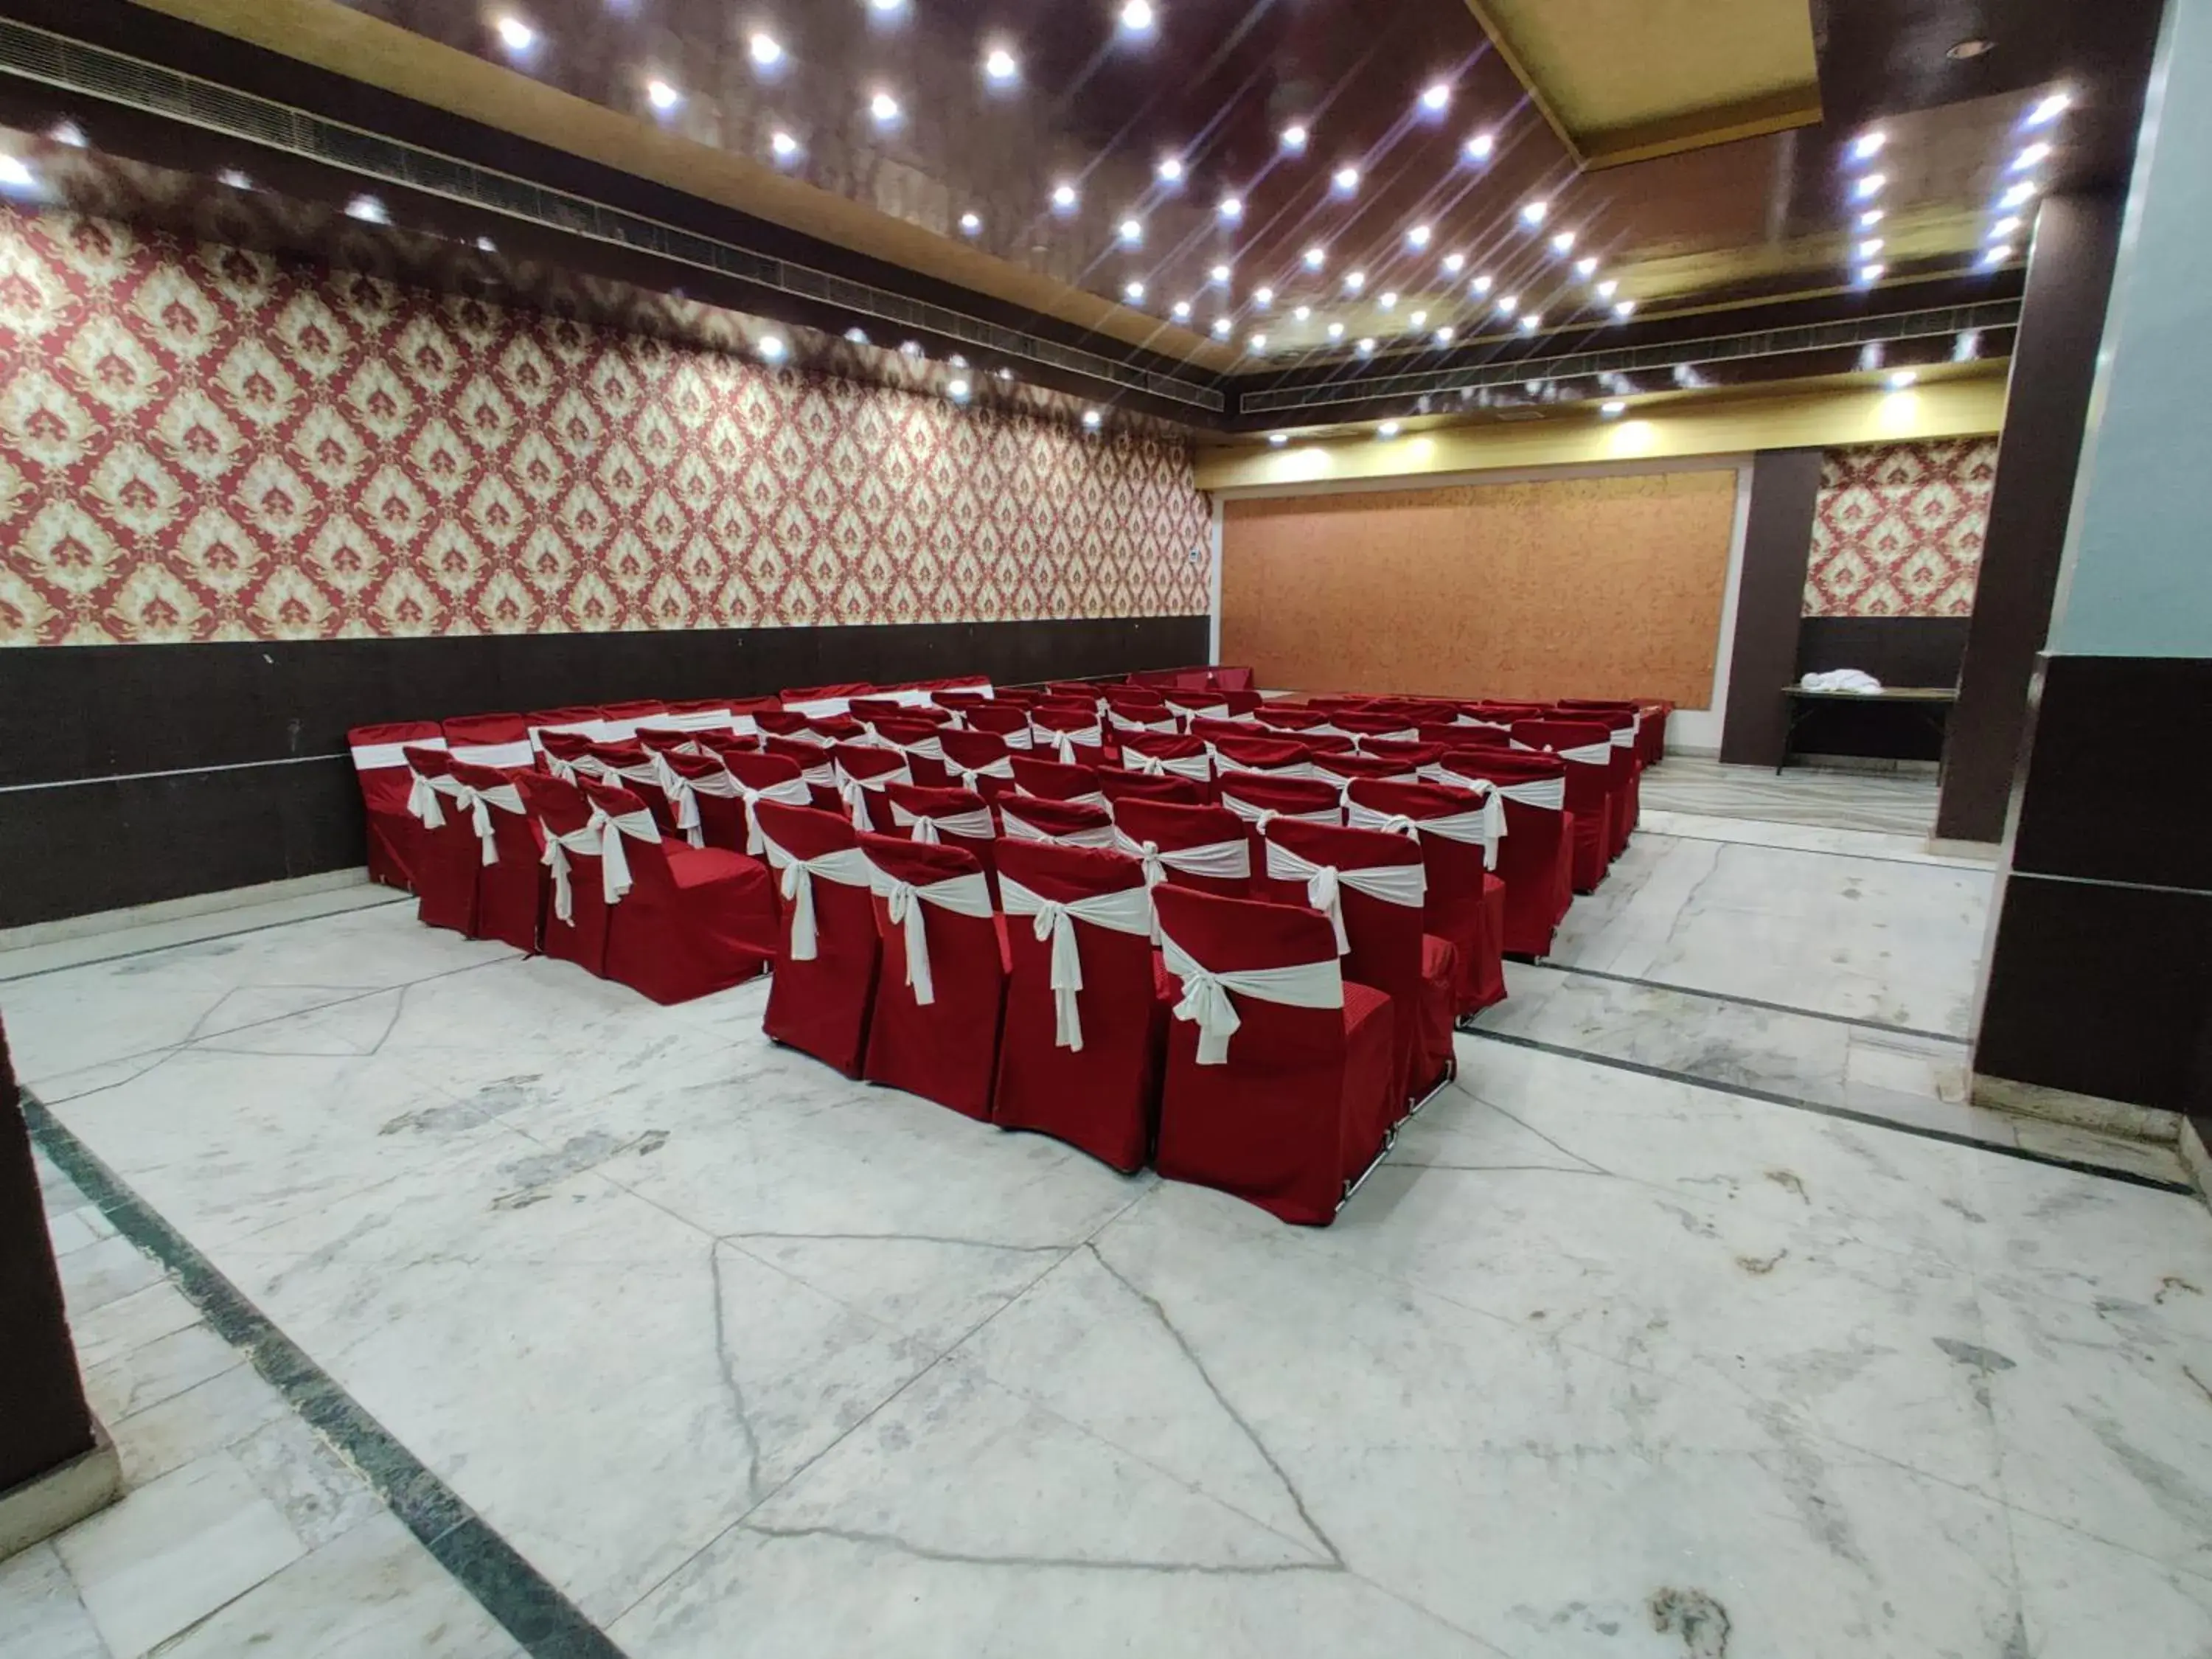 Banquet/Function facilities, Banquet Facilities in Hotel Savi Regency